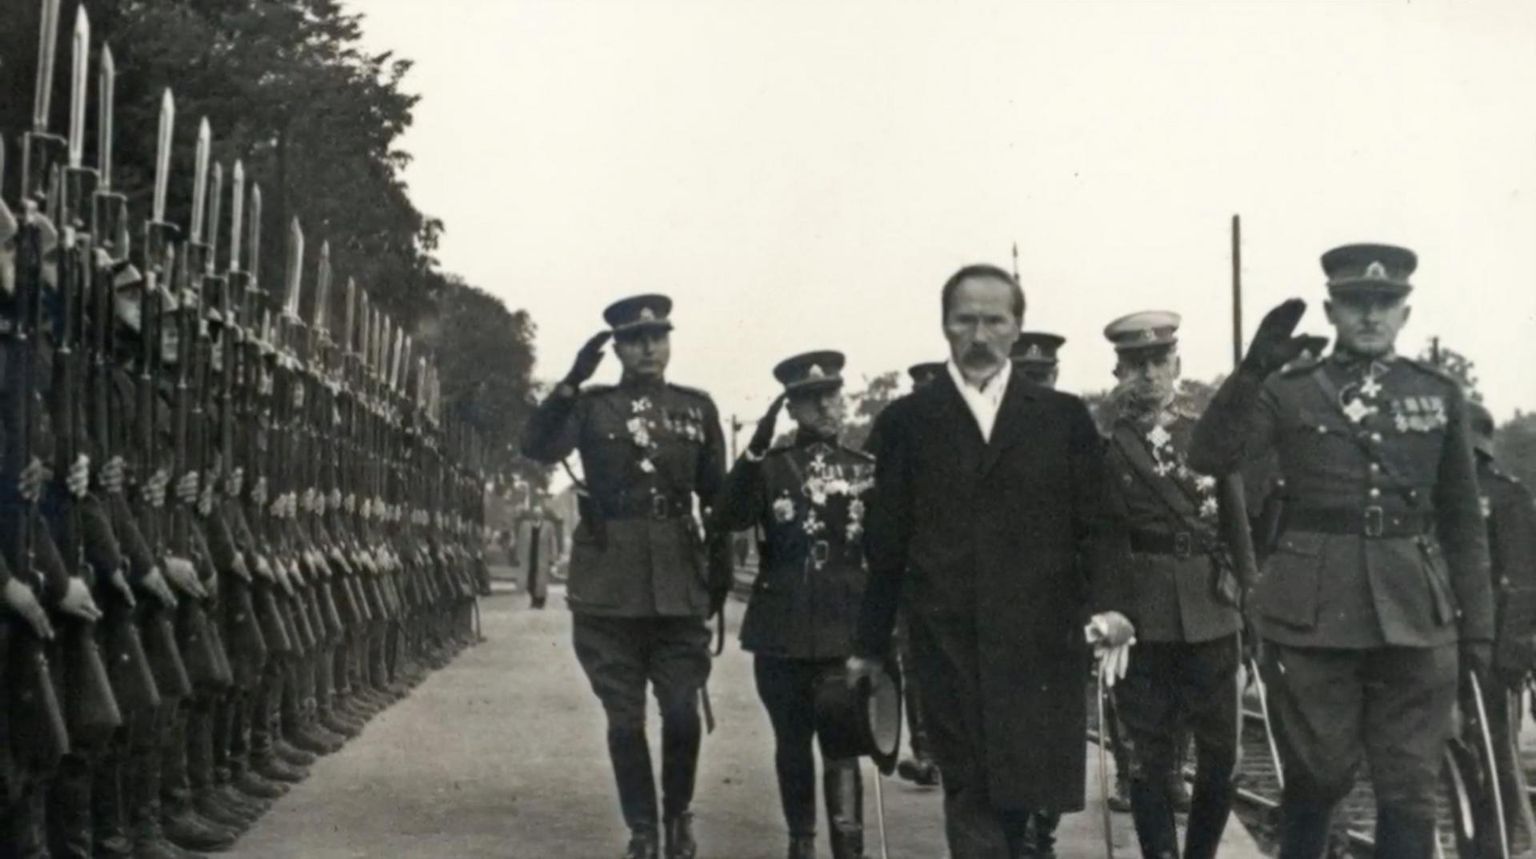 Leedu esimene president Antanas Smetona sõjaväe ülevaatusel. 